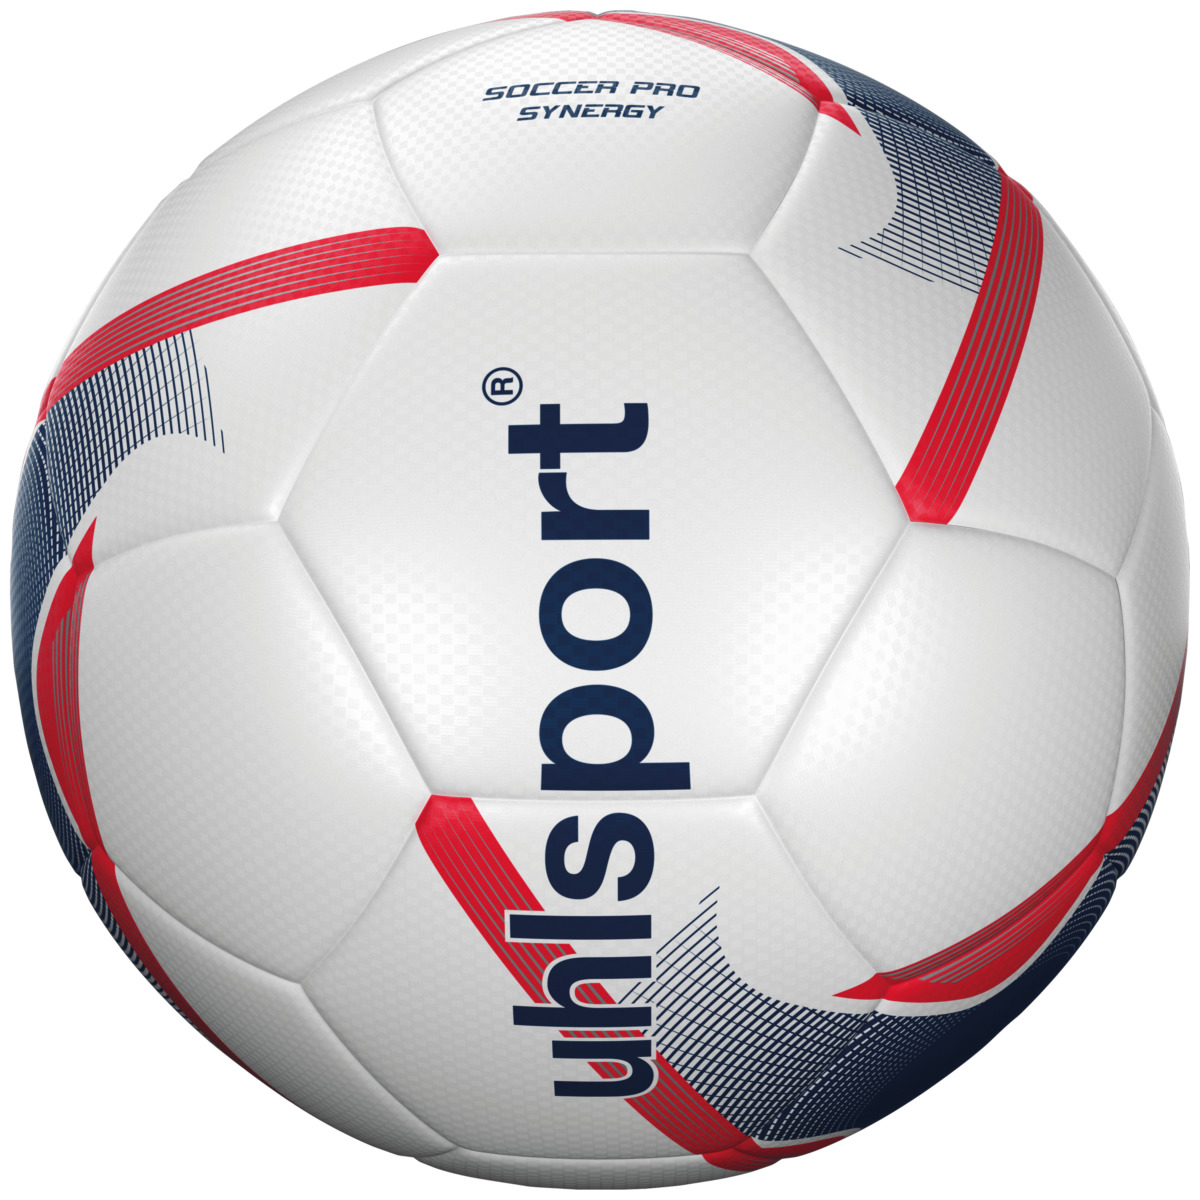 Uhlsport SOCCER PRO SYNERGY Fussball für Kunstrasen und Naturrasen 100166801